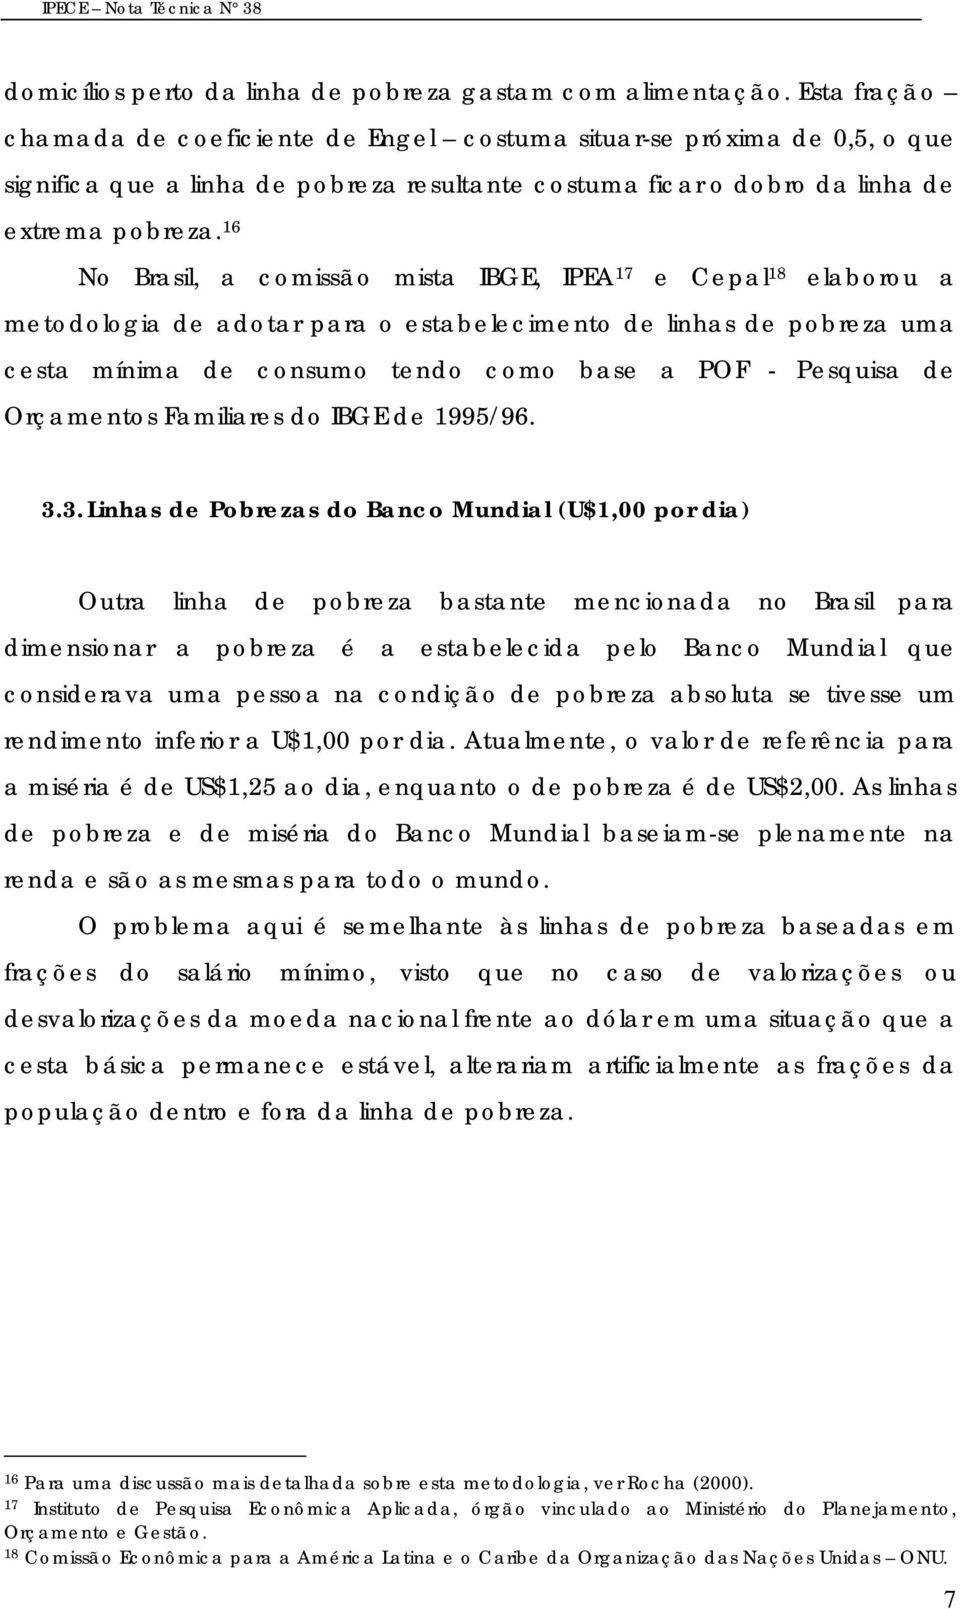 16 No Brasil, a comissão mista IBGE, IPEA 17 e Cepal 18 elaborou a metodologia de adotar para o estabelecimento de linhas de pobreza uma cesta mínima de consumo tendo como base a POF - Pesquisa de